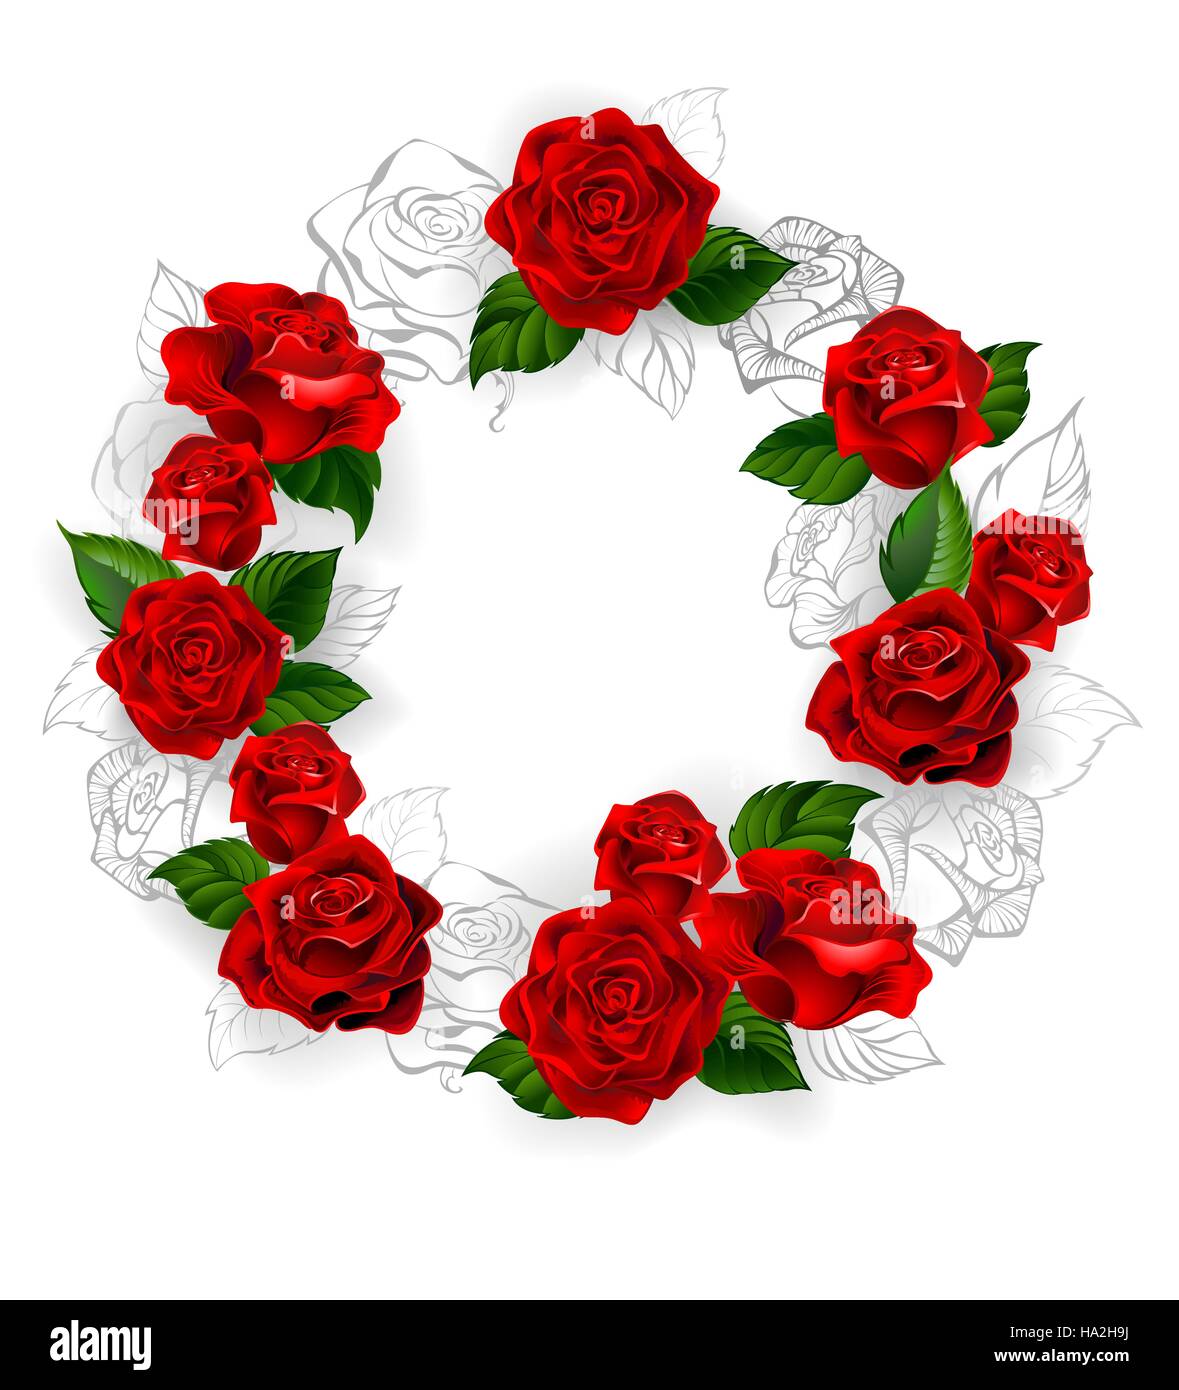 Kreis aus roten Band und ziehen eine Bleistift-Skizze der Rosen auf weißem Hintergrund. Stock Vektor